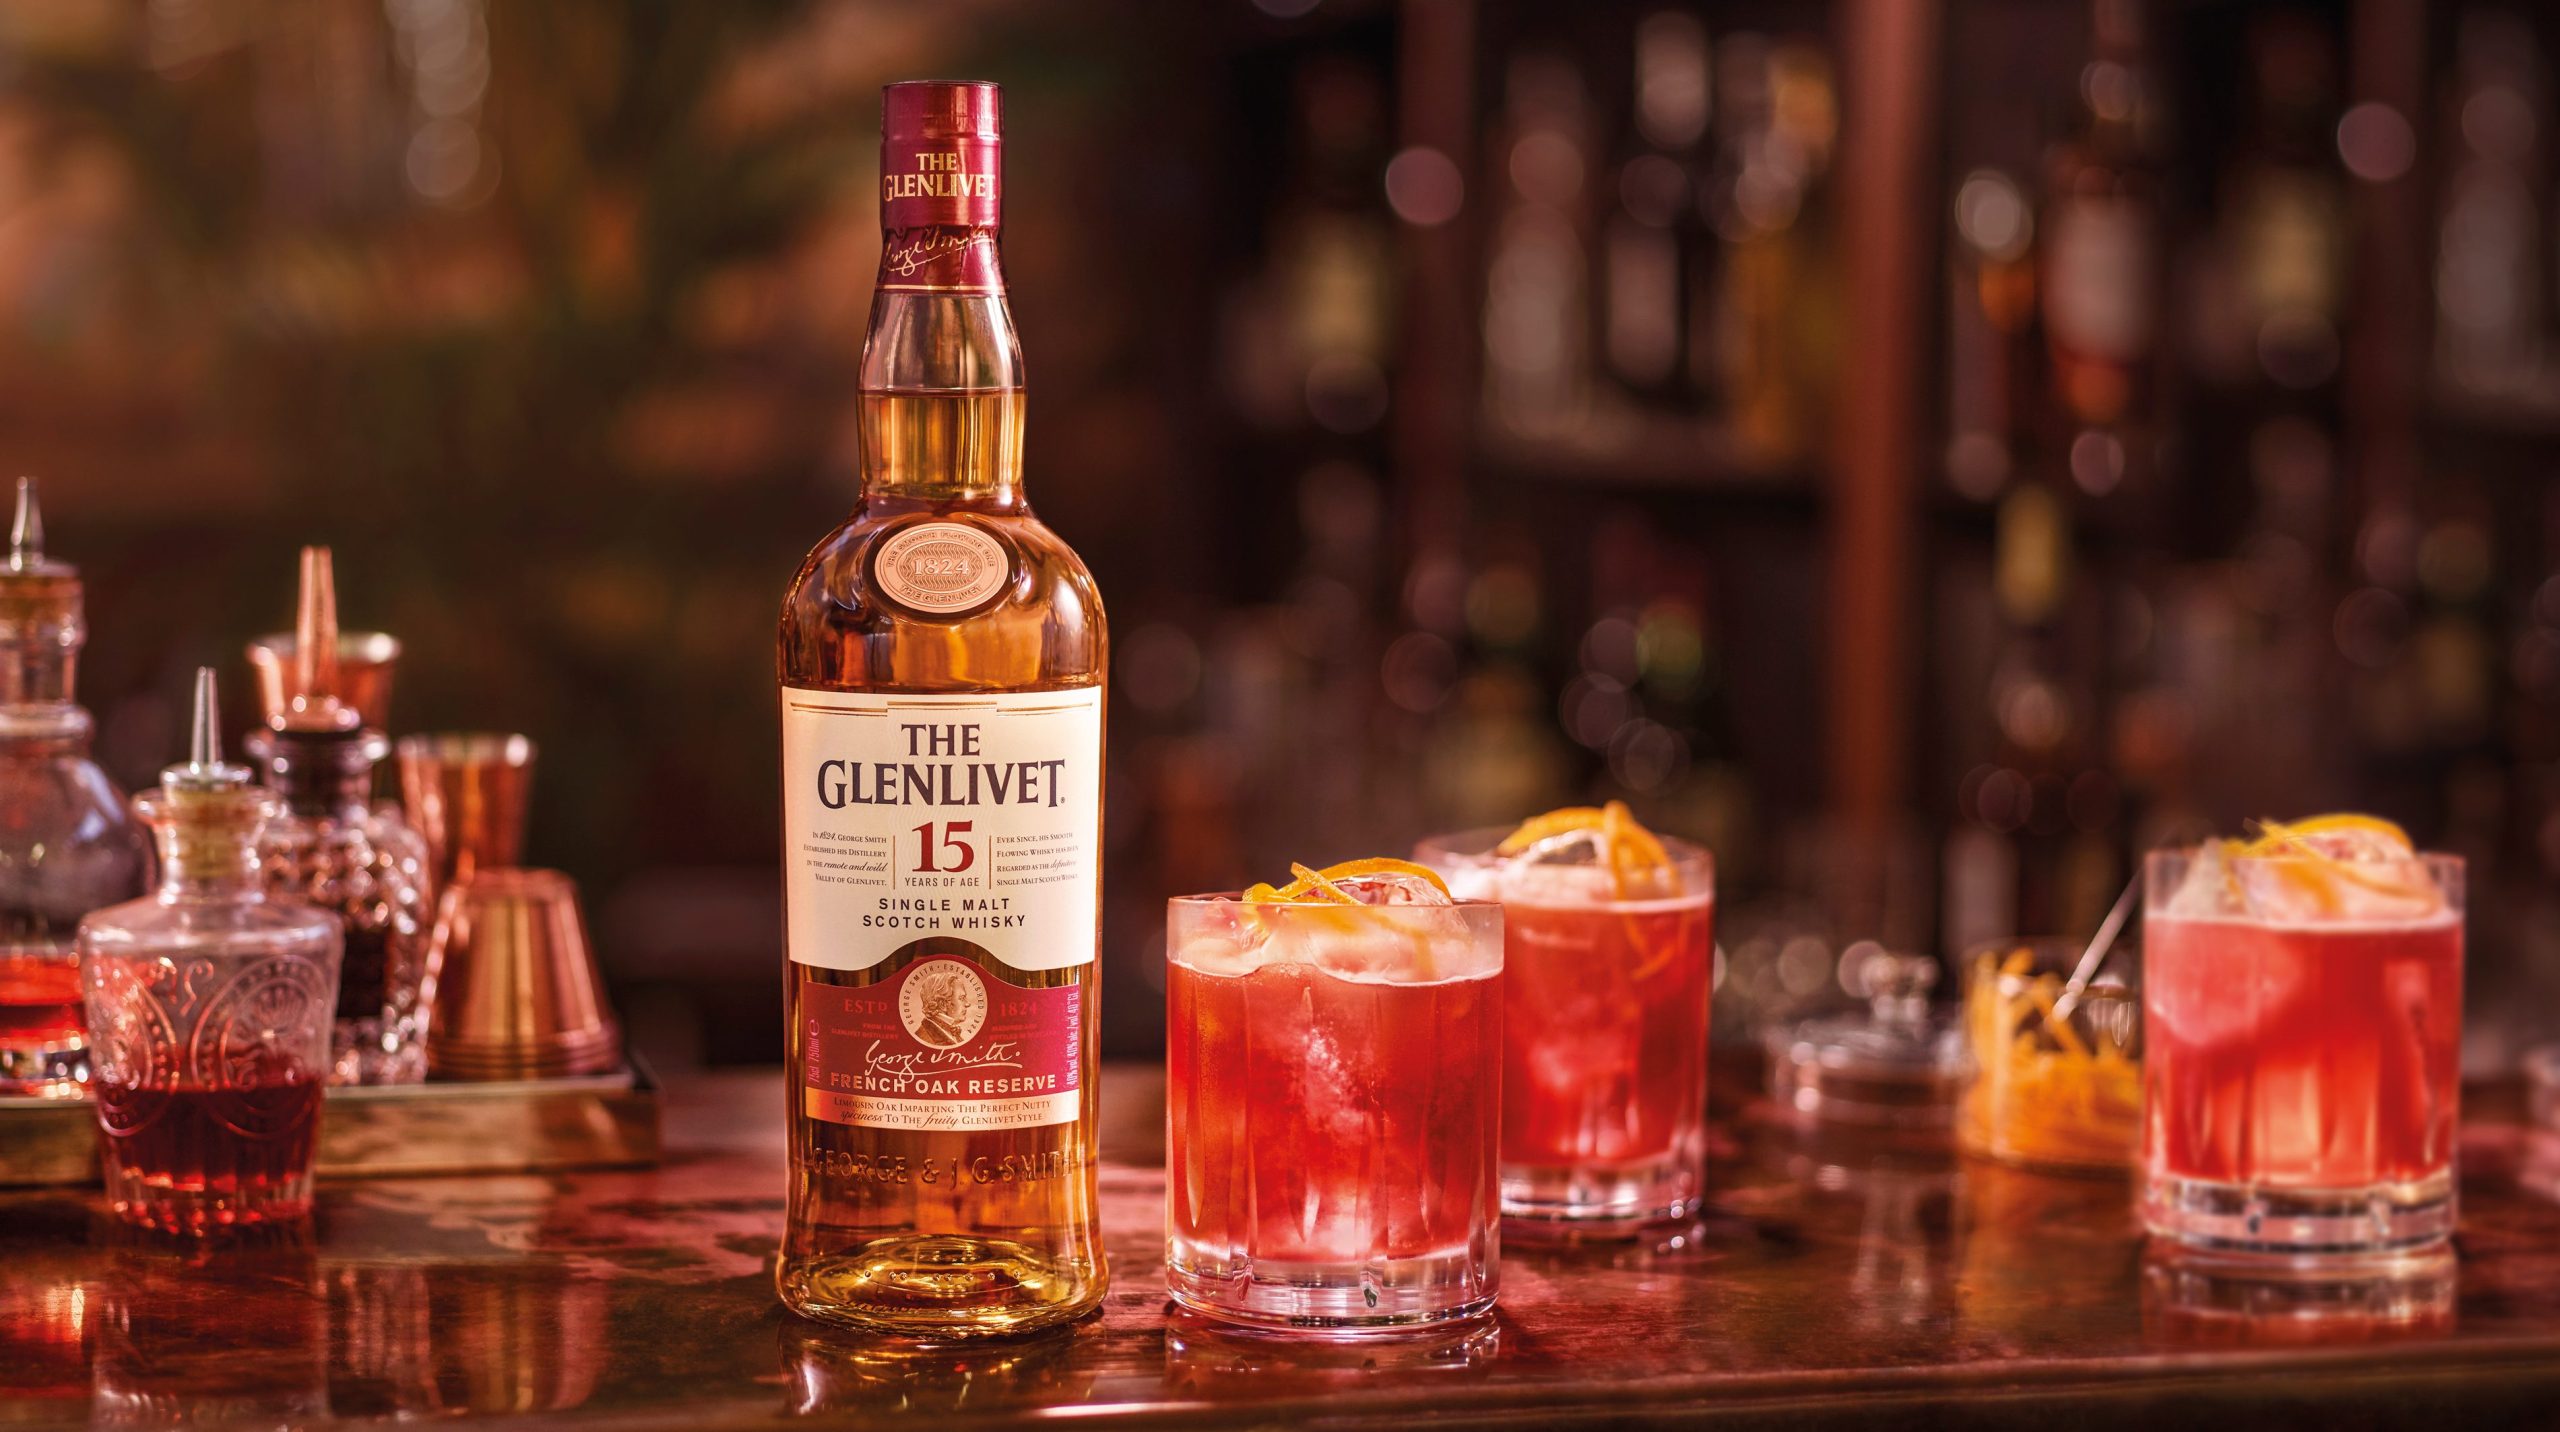 the glenlivet 15 year old full scottish whisky cocktail